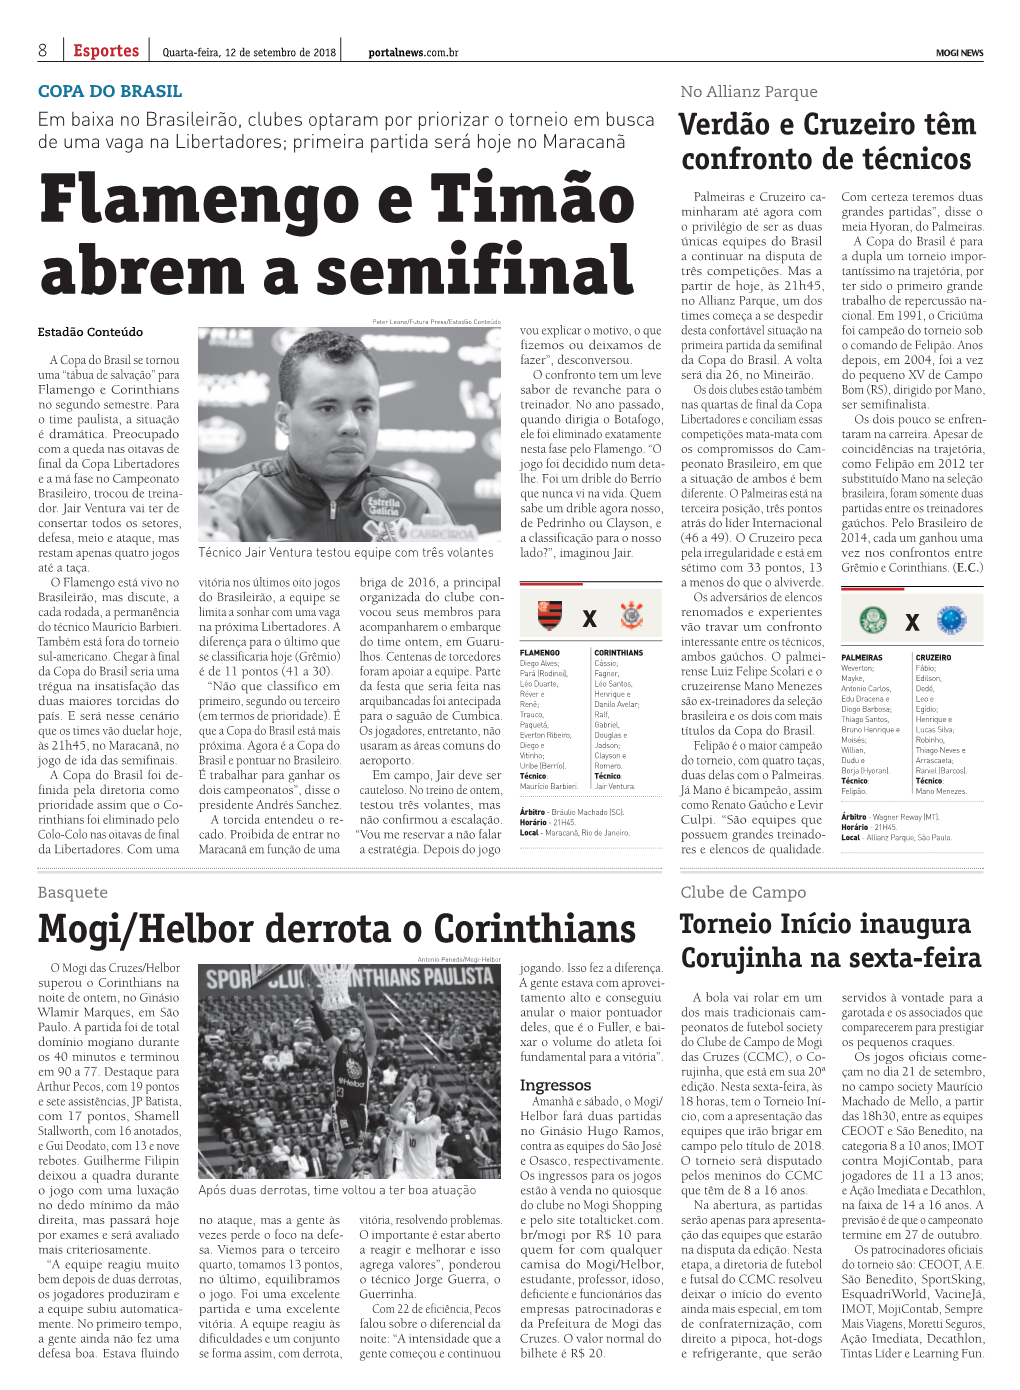 Flamengo E Timão Abrem a Semifinal